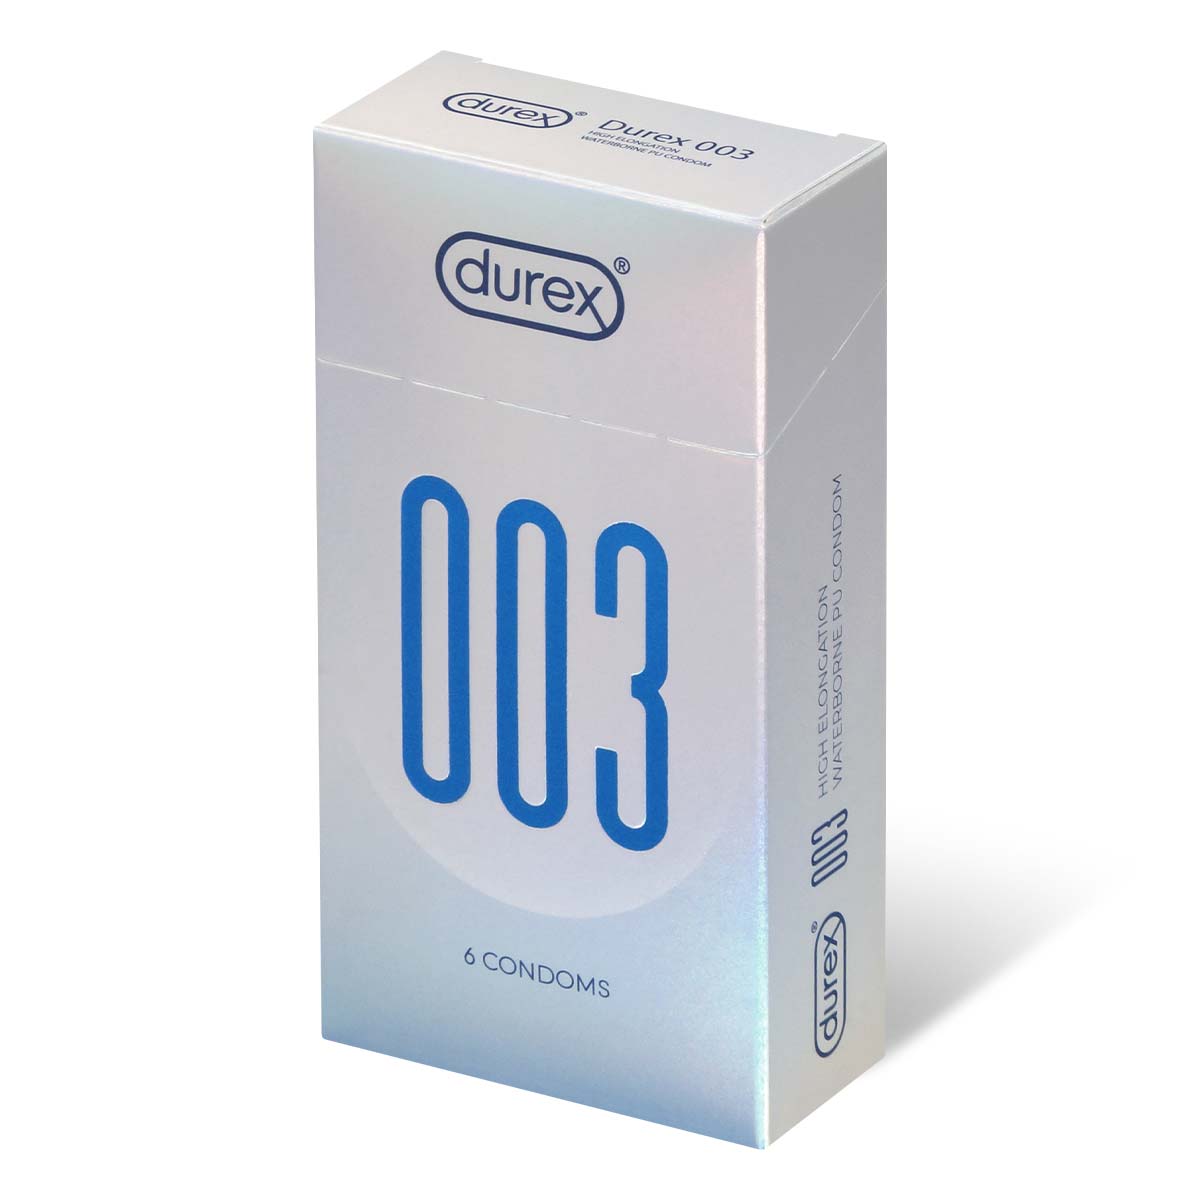 Durex 003 6's Pack High Elongation Waterborne Polyurethane Condom-p_1